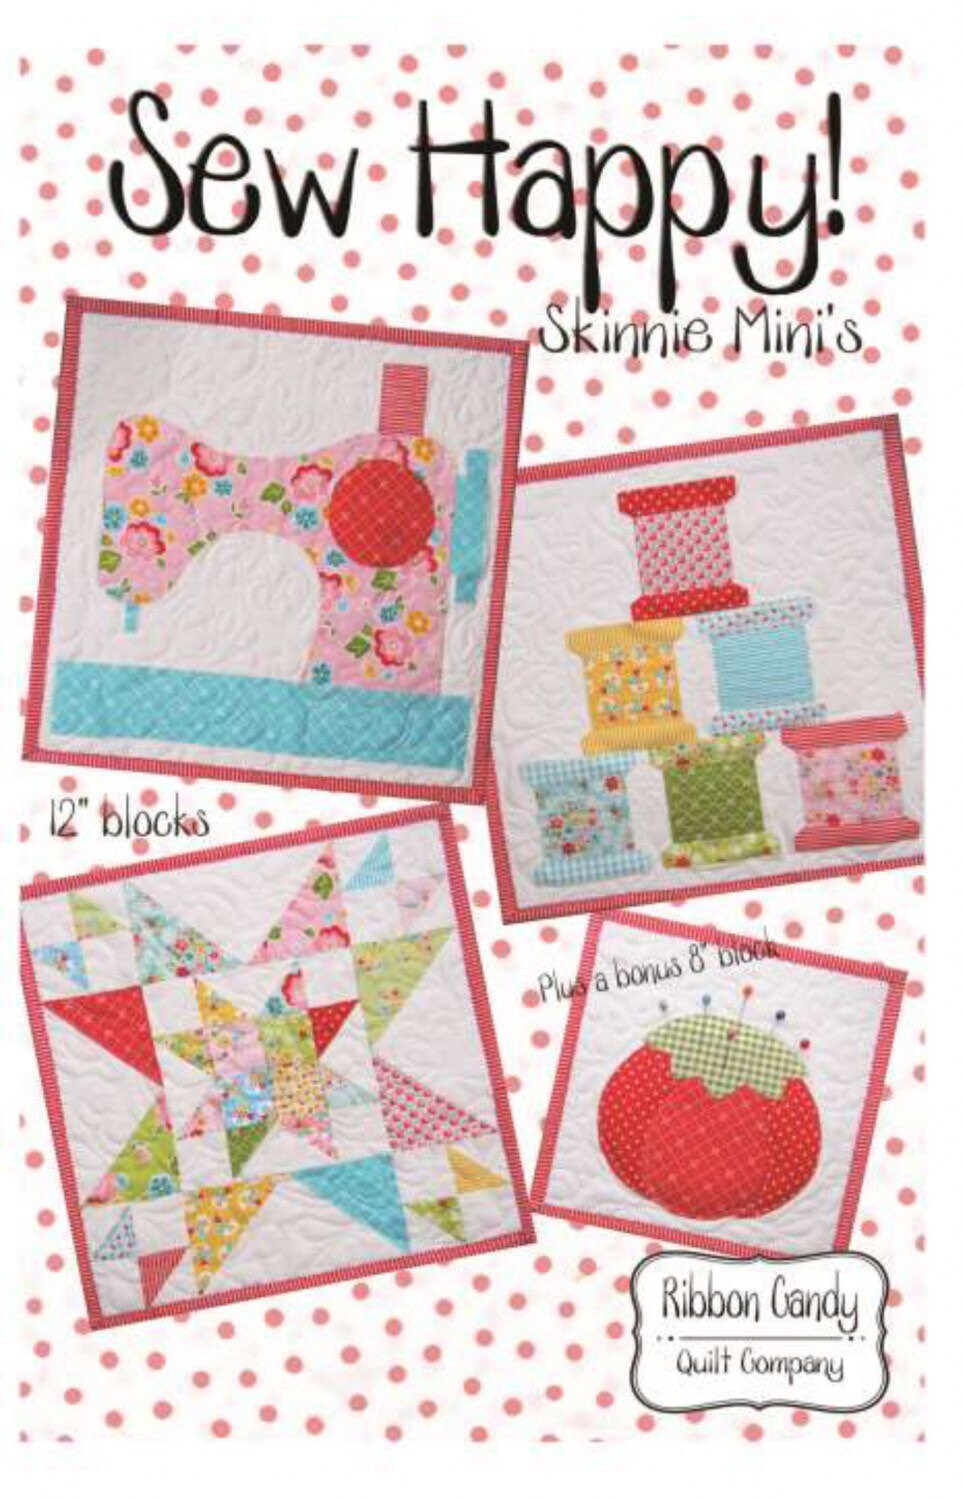 Sew Happy Mini Quilt Patterns - Skinnie Mini’s - Ribbon Candy Quilt Company - Three 12” mini quilt patterns - Bonus 8” mini